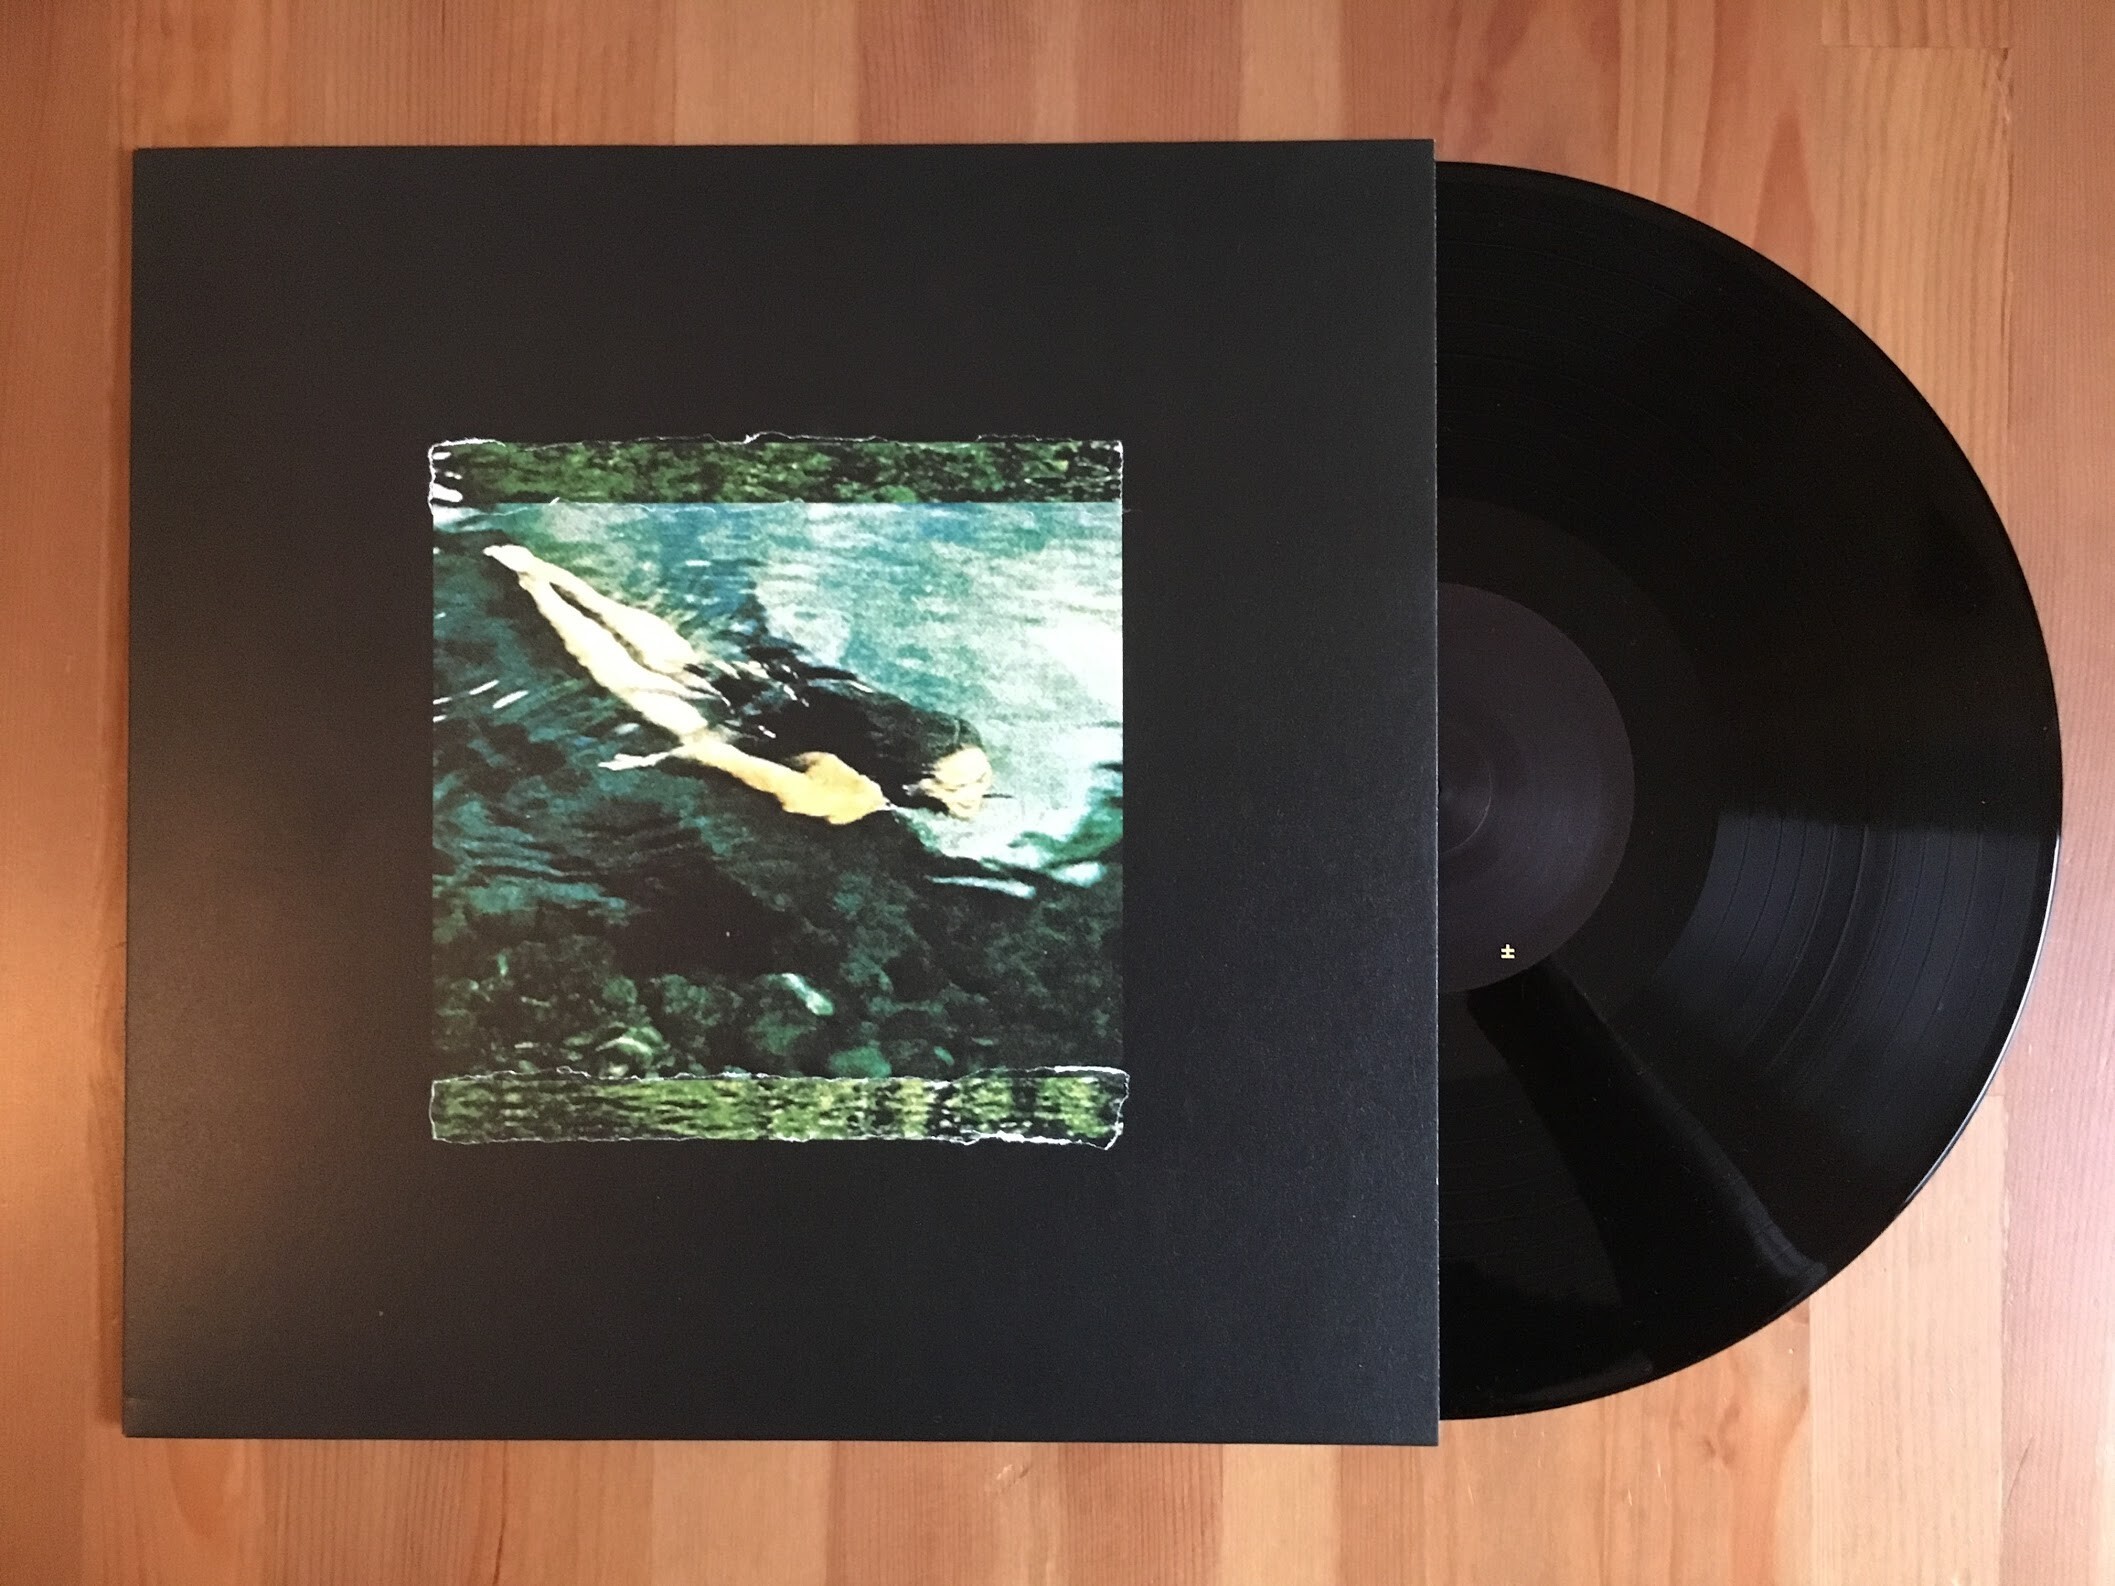 Sleepdealer - Homesick - Vinyl Digital